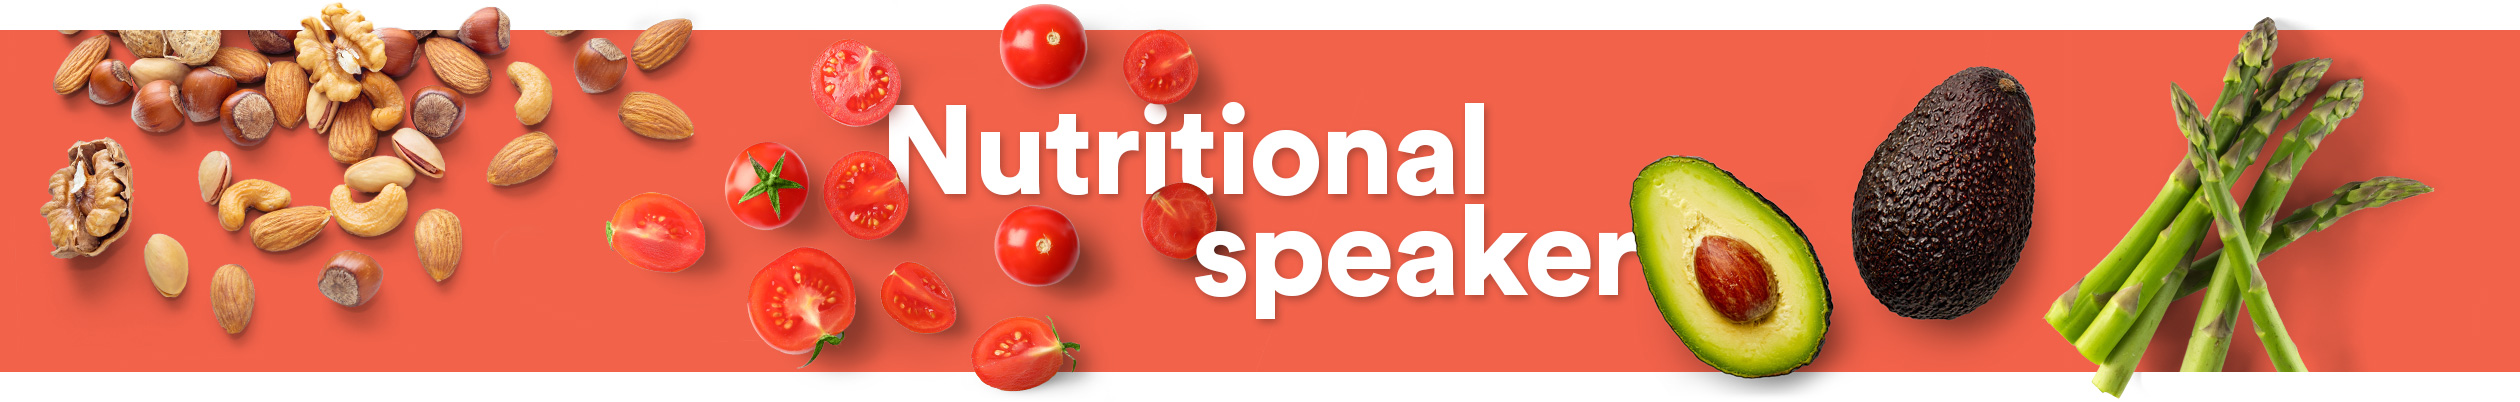 Nutritional speaker